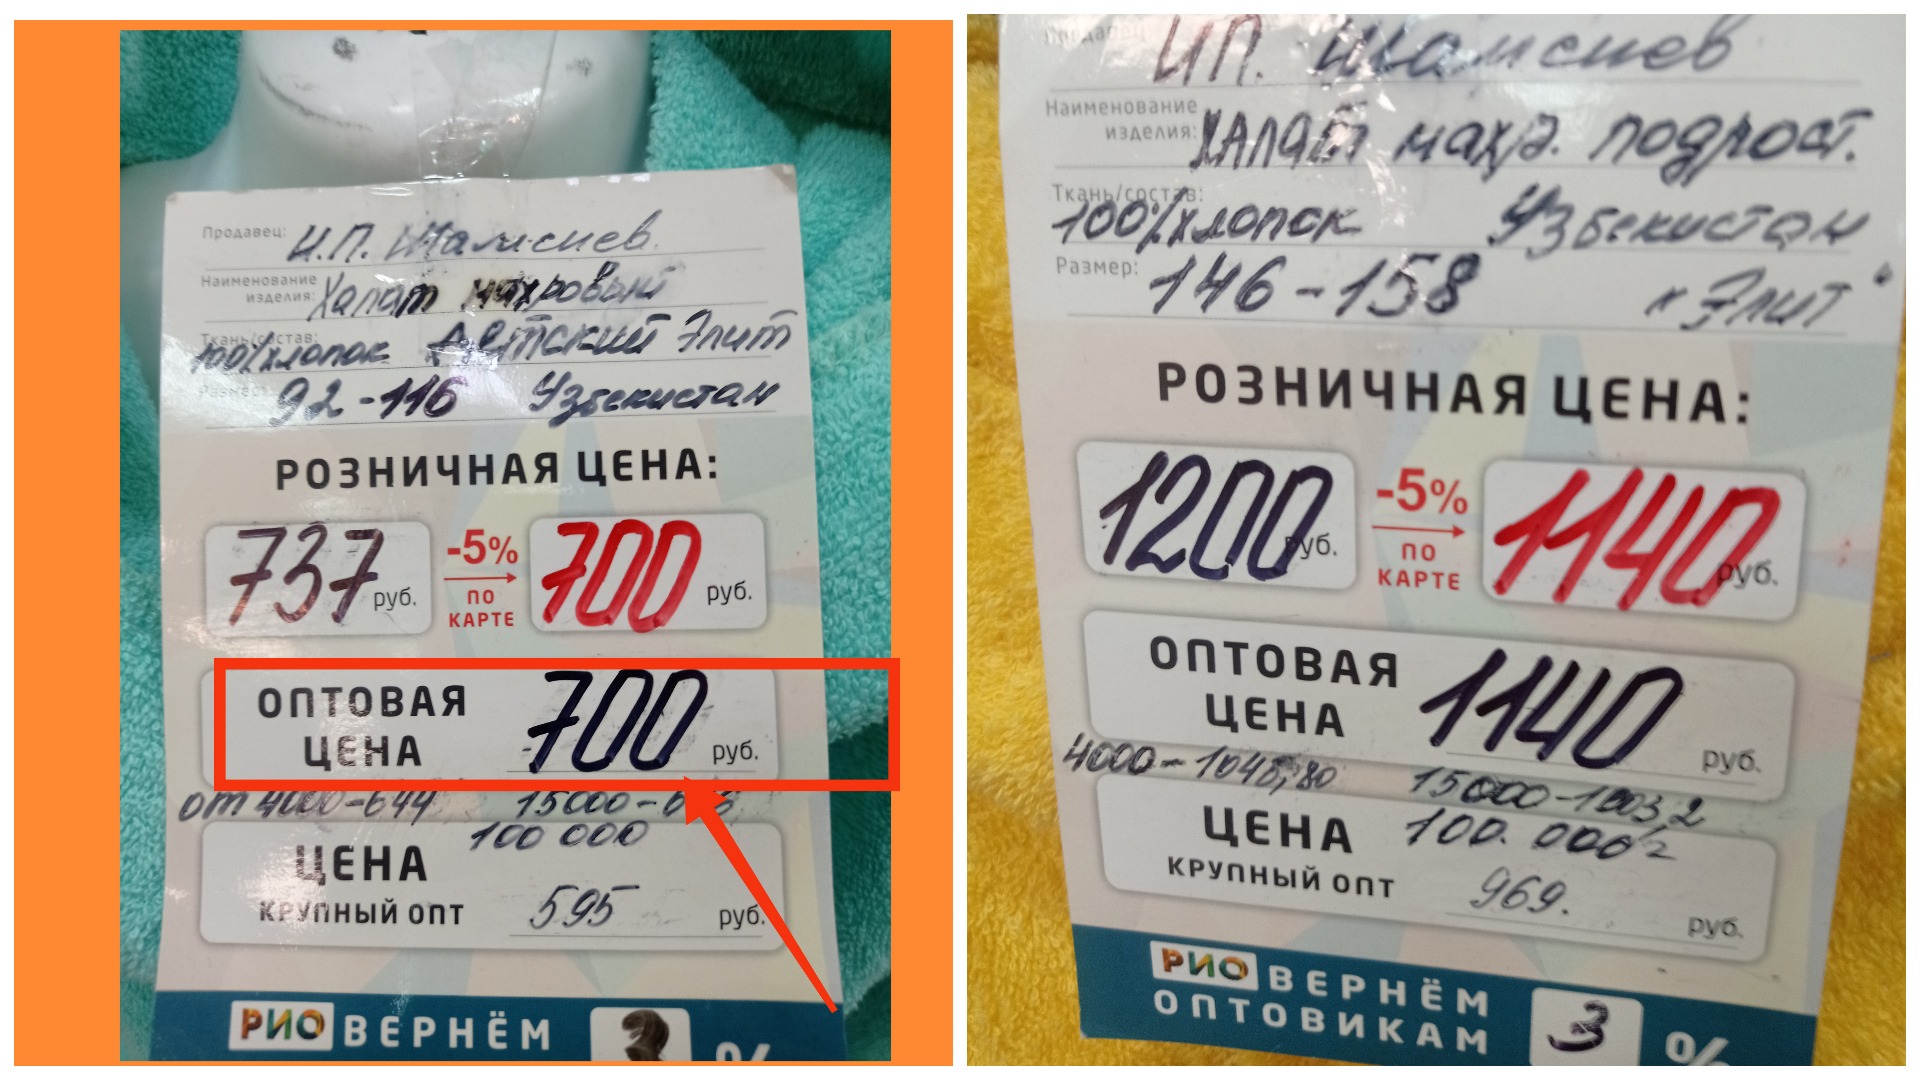 Ивановский текстиль, цены на продукцию в ТЦ "Рио".